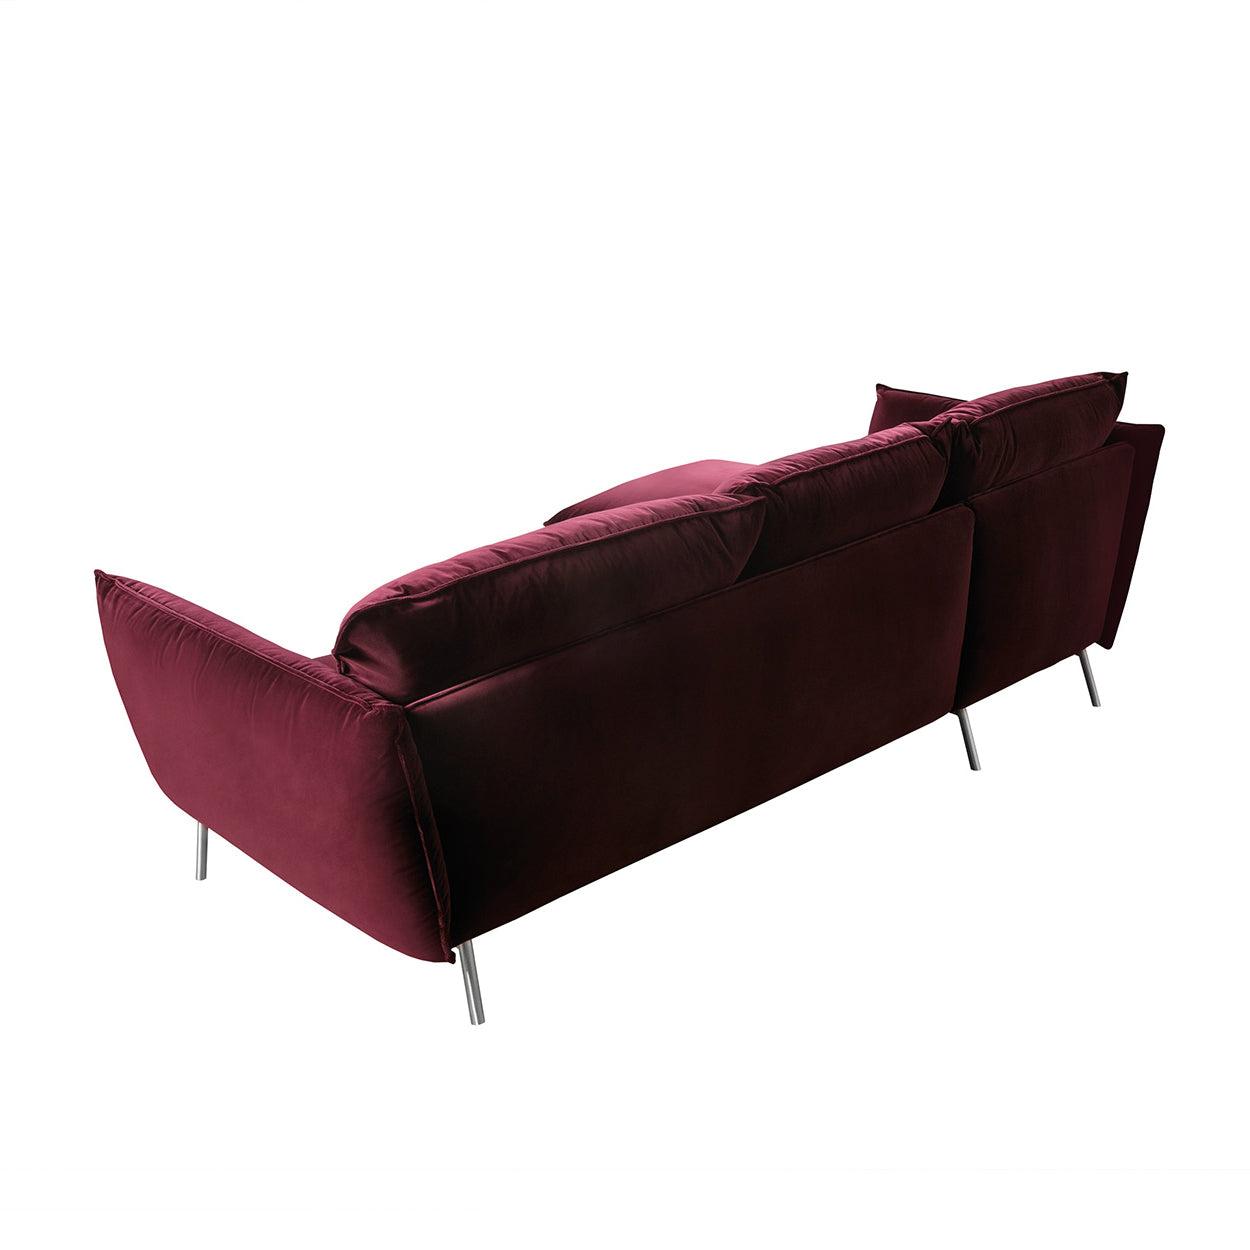 Standard Corner Sofa